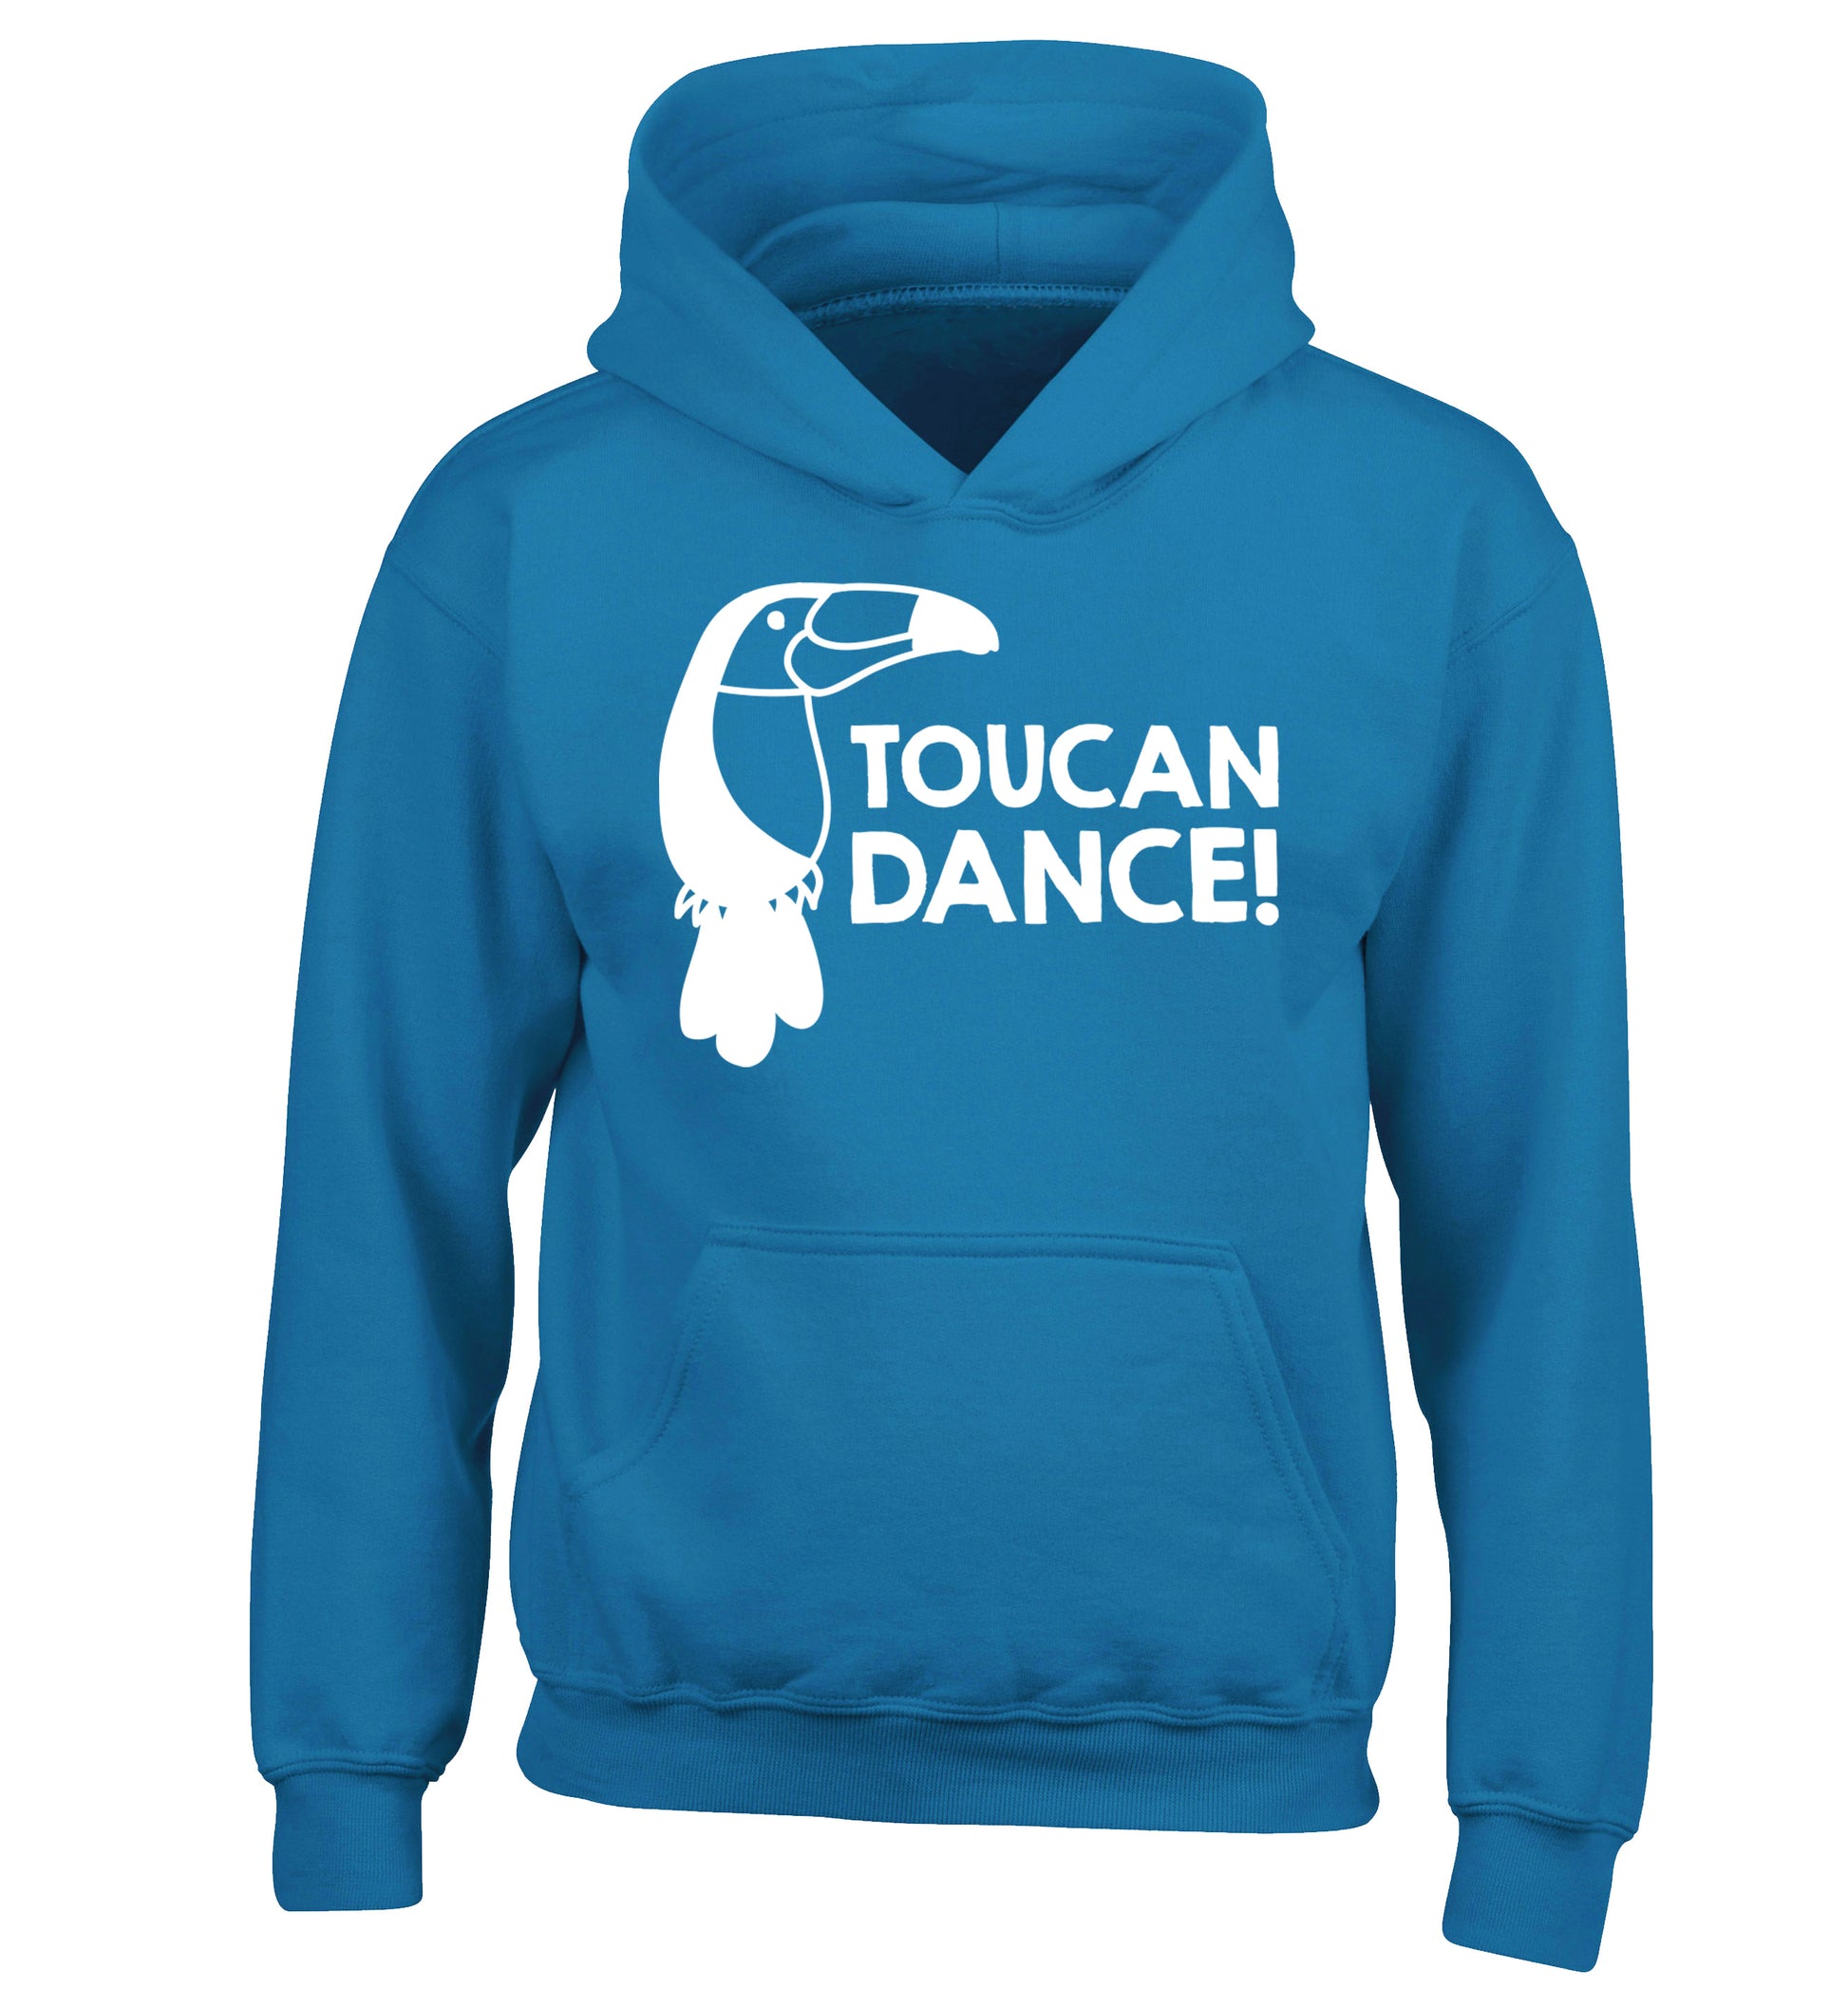 Toucan dance children's blue hoodie 12-13 Years